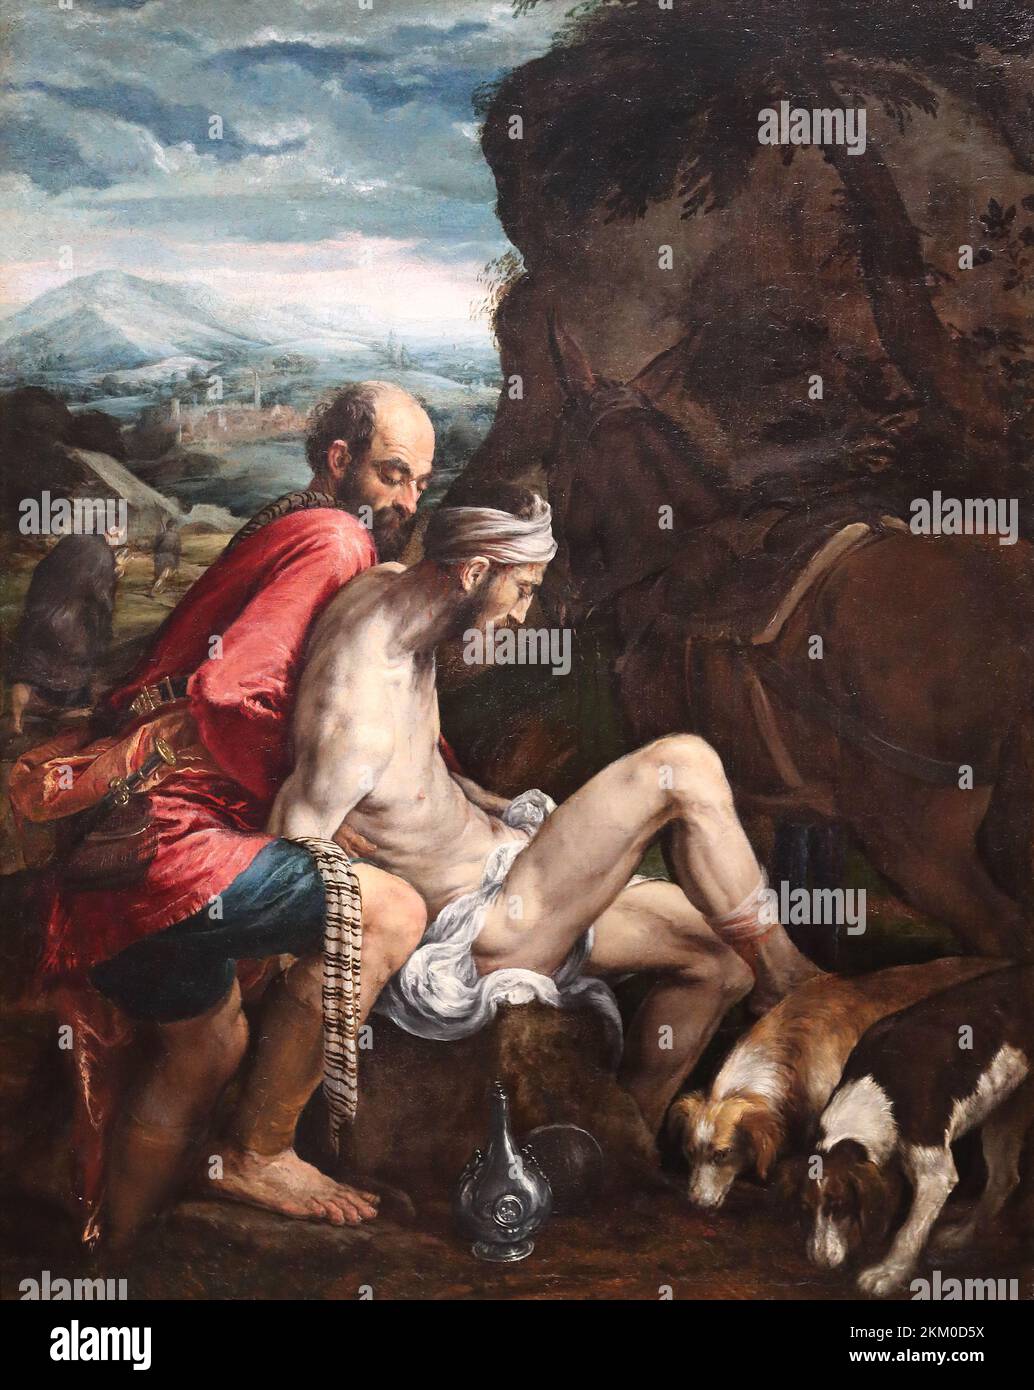 Il buon samaritano del pittore rinascimentale italiano Jacopo Bassano alla National Gallery, Londra, Regno Unito Foto Stock